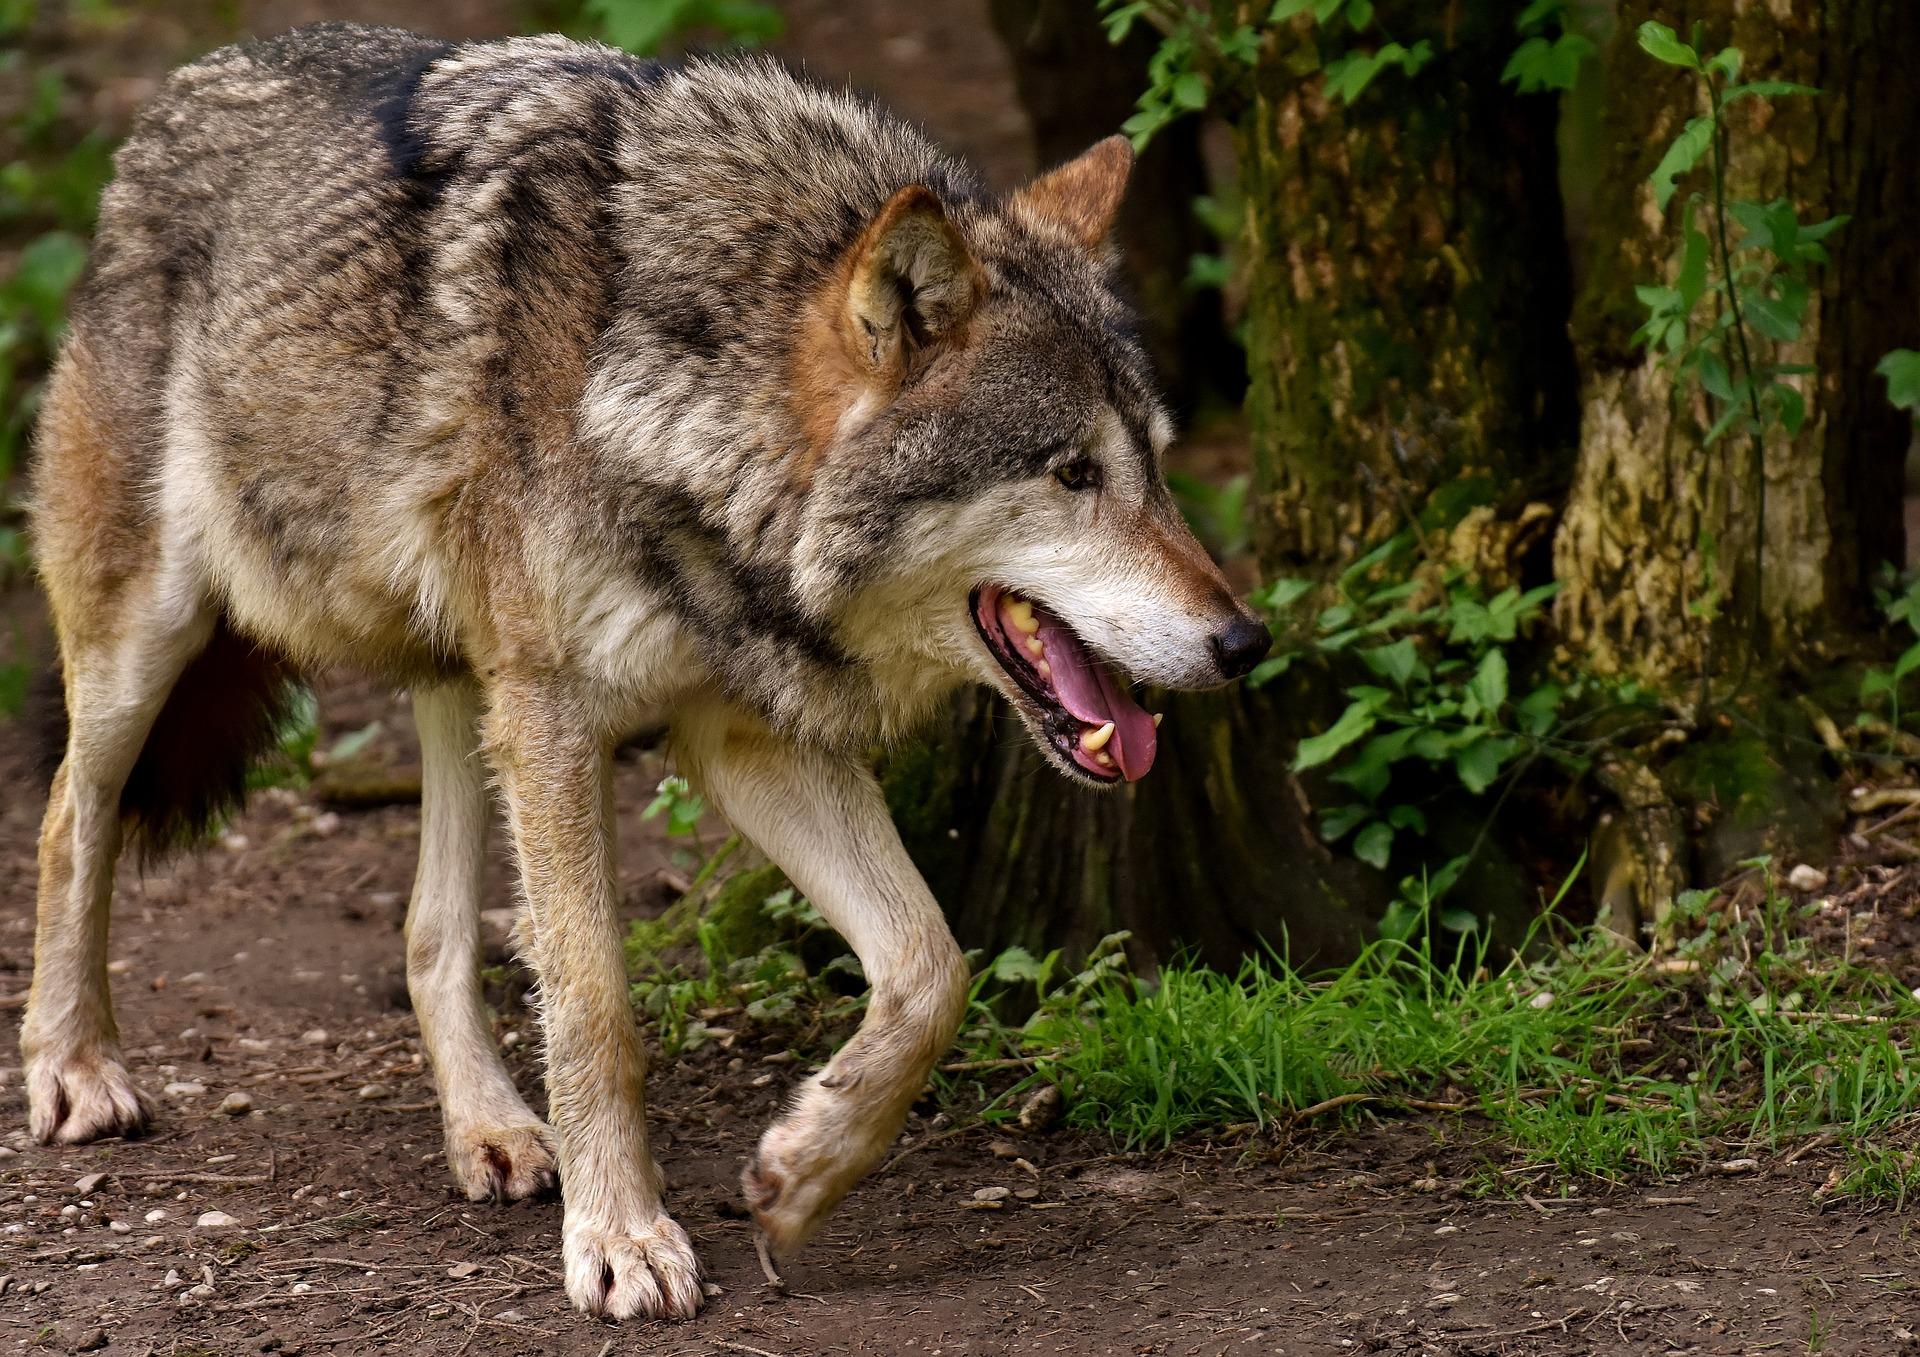 500 personnes ont manifesté ce samedi 11 mars contre l'autorisation du tir de défense contre le loup dans le haut Doubs. (Photo d'illustration Pixabay - Alexa)